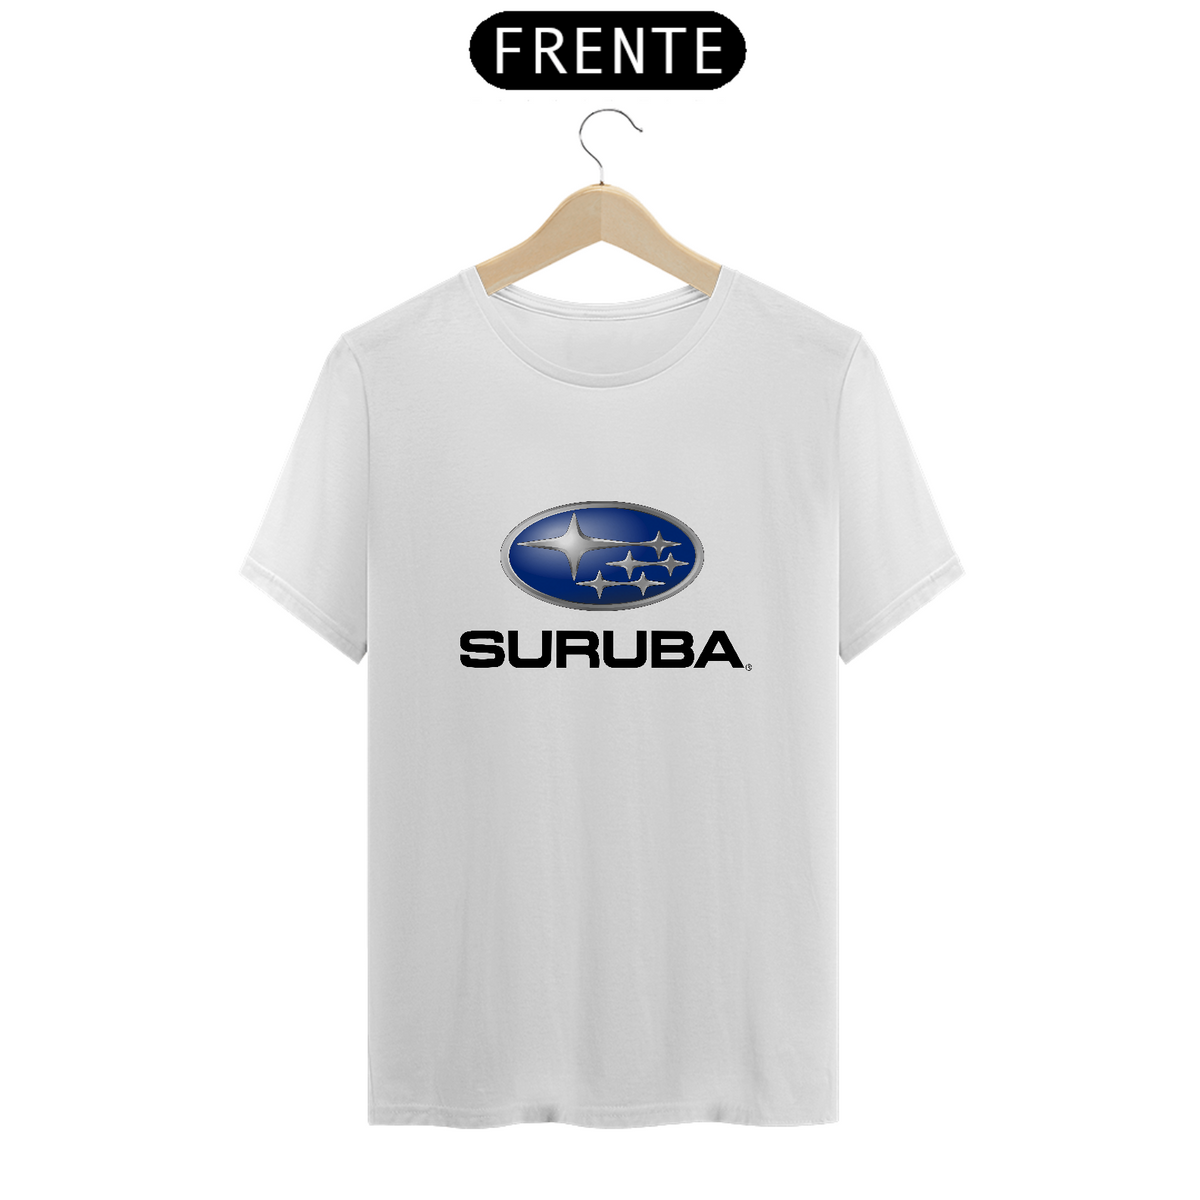 Nome do produto: Camisetas Engraçadas - Suruba (Sátira Subaru)